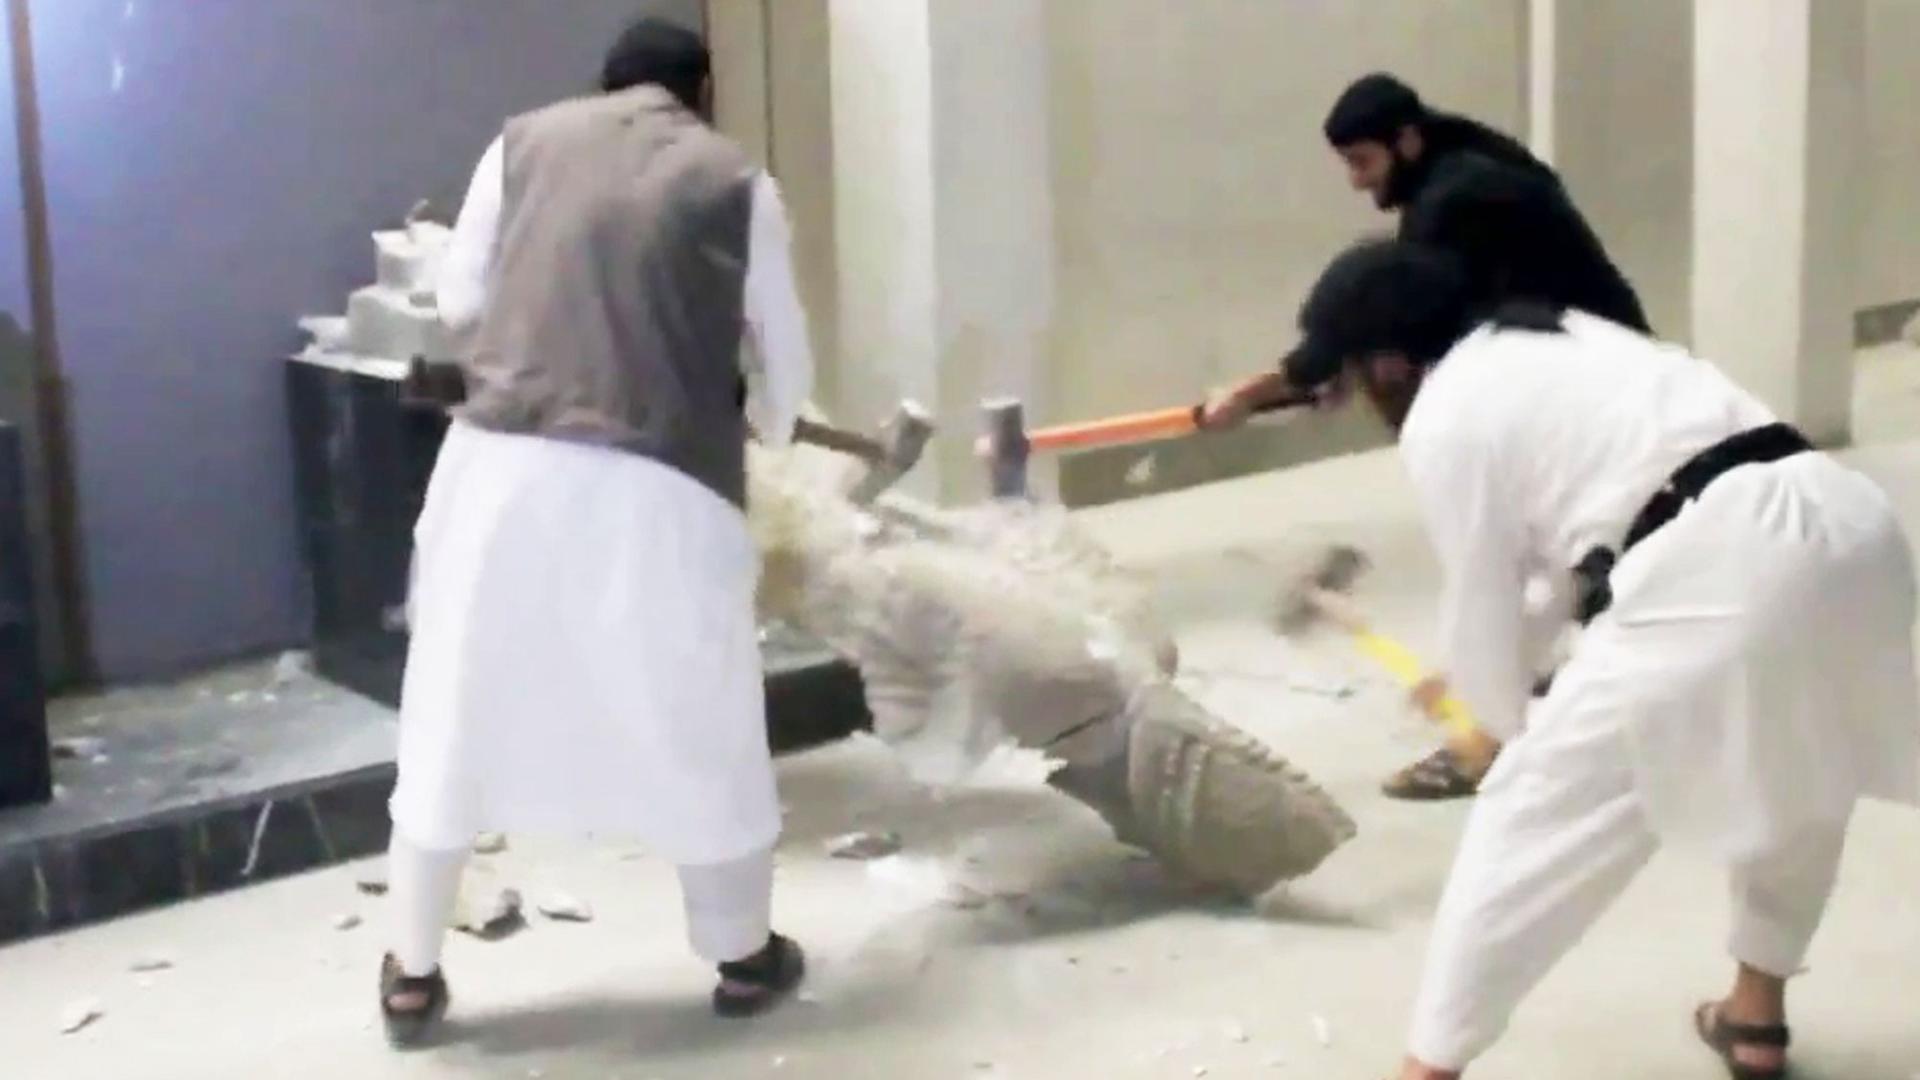 Screenshot aus einem Video, das von der Terrormiliz Islamischer Staat (IS) veröffentlicht wurde und das zeigen soll, wie IS-Anhänger im Museum von Mossul Statuen zerstören.